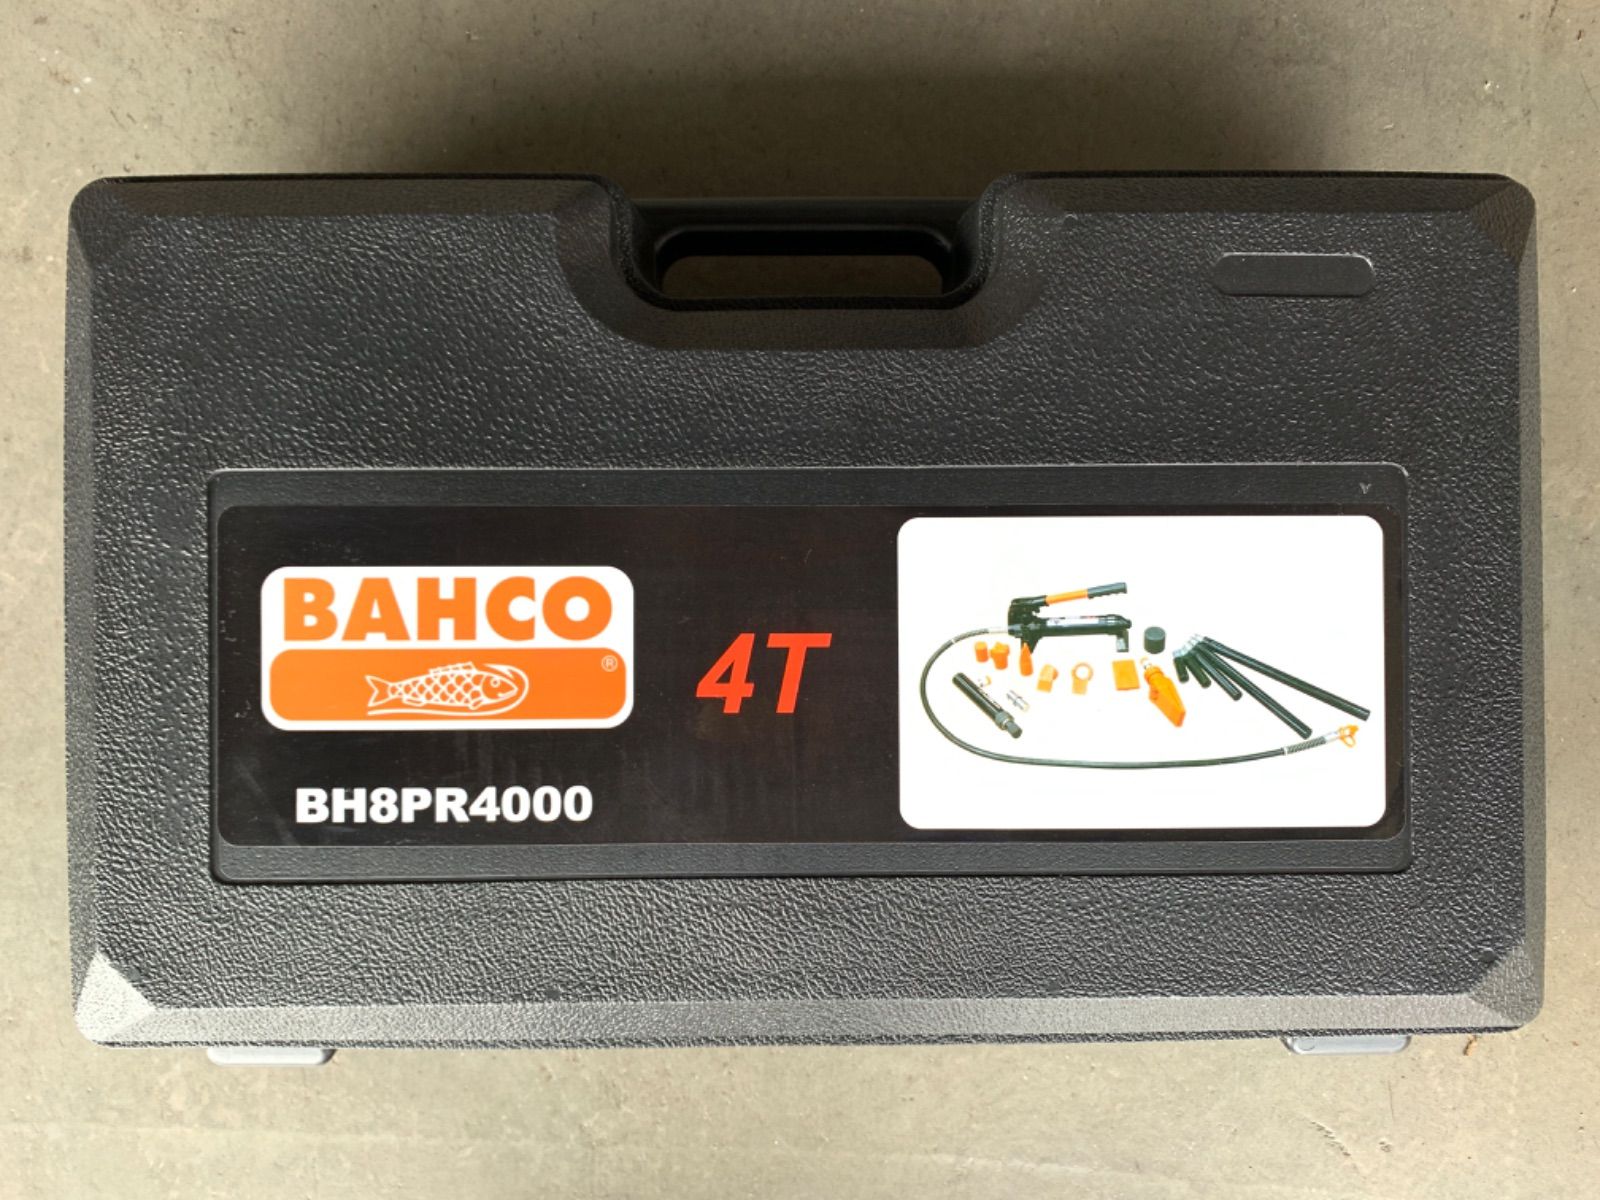 BAHCO バーコ 多目的ジャッキ 携帯用ラムキット 4t BH8PR4000 スピード発送????HYMA shop メルカリ